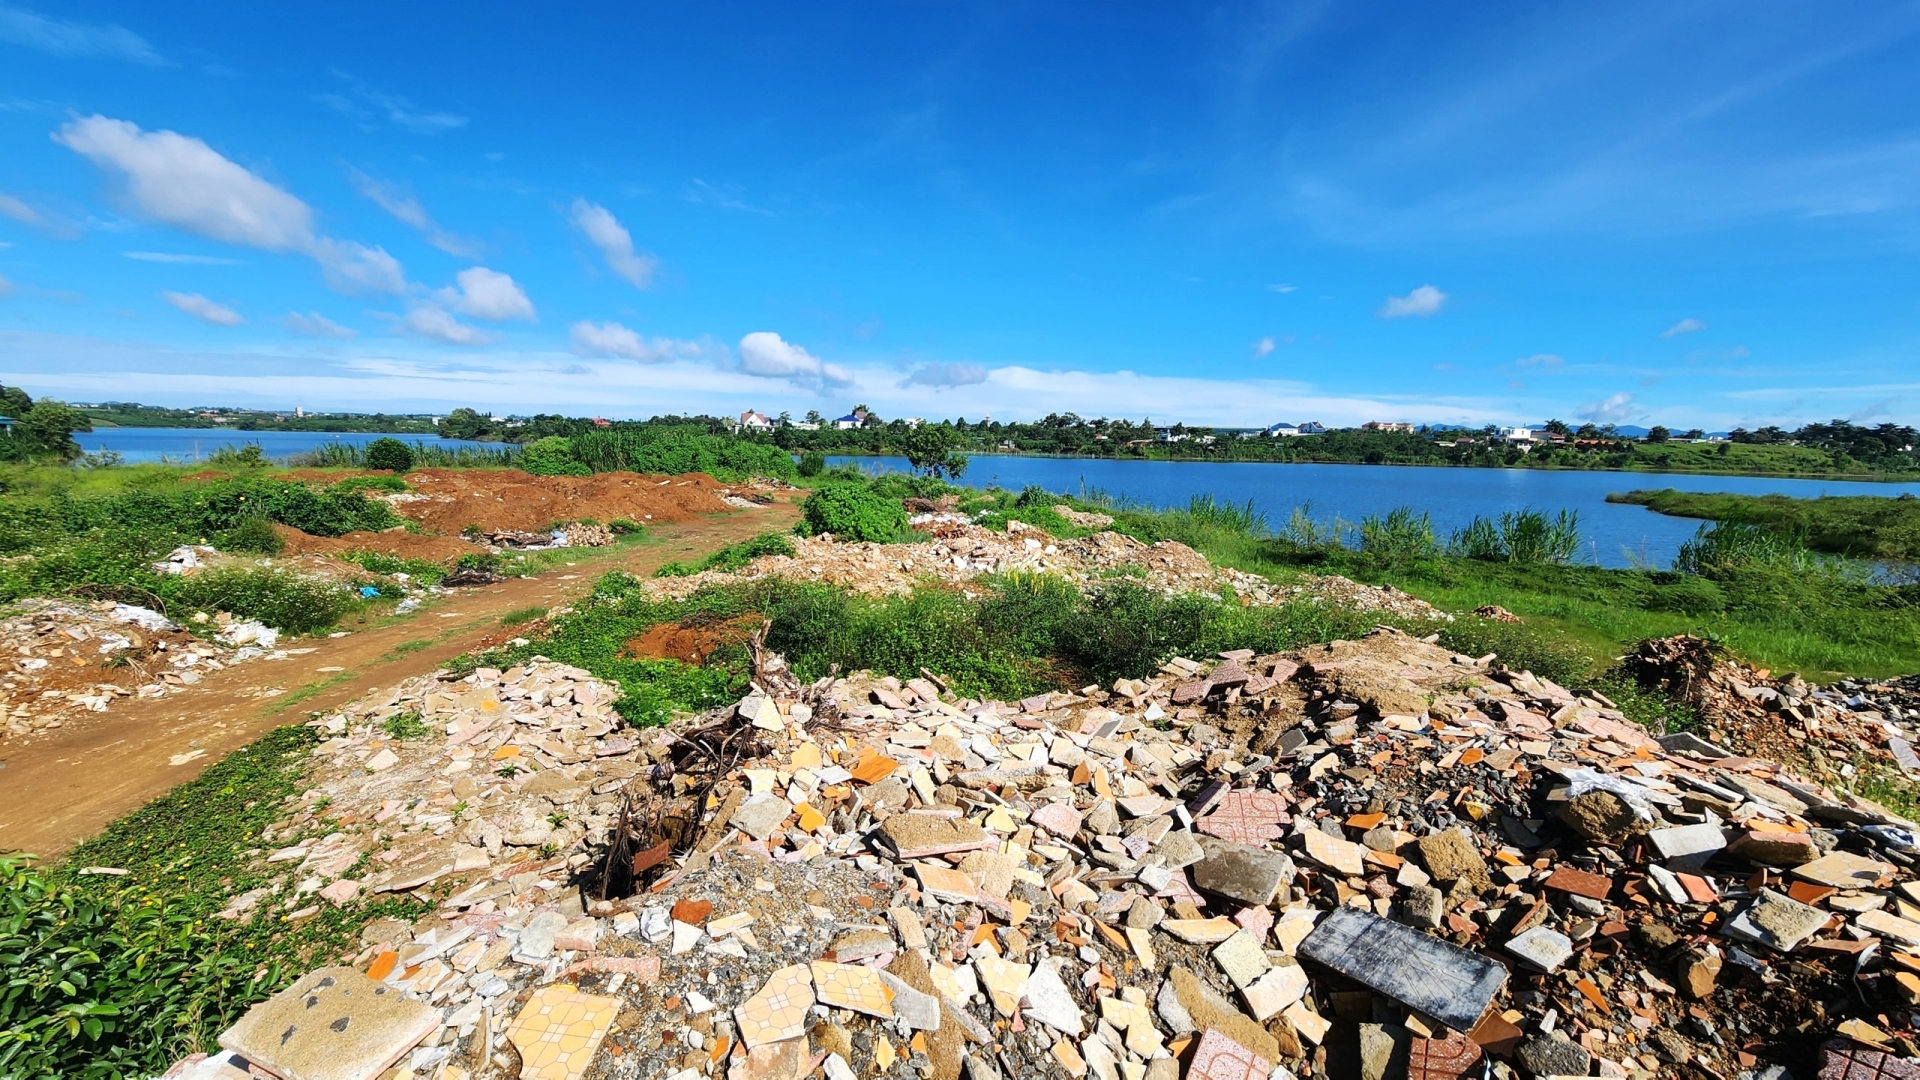 UBND tỉnh chỉ đạo xử lý dứt điểm phế thải, rác thải bủa vây bờ hồ Lộc Thắng